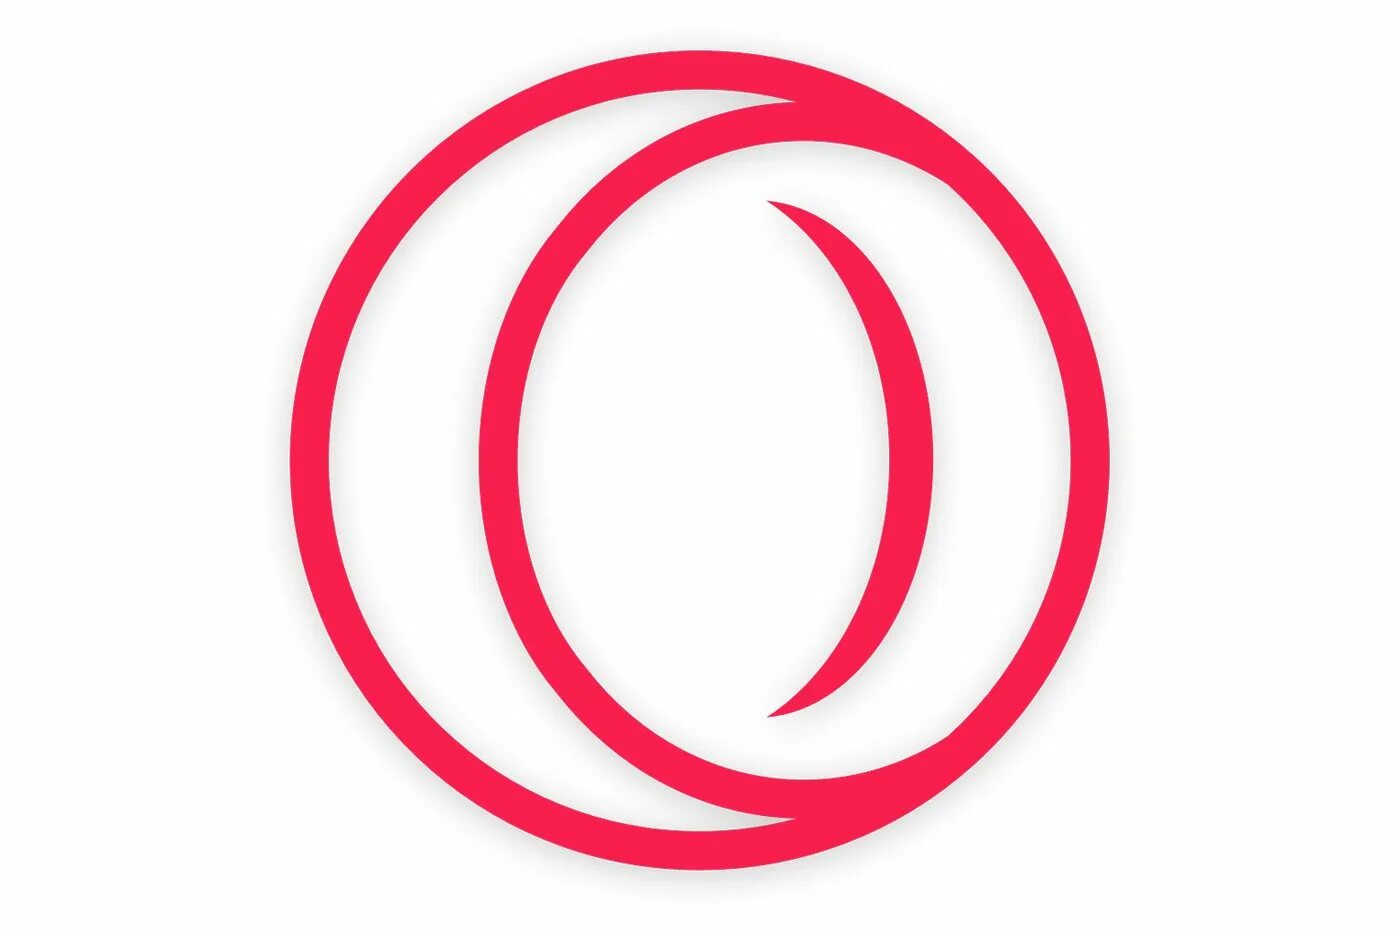 Дж икс. Opera GX. Opera логотип. Логотип оперы GX. Логотипы оперы браузера.